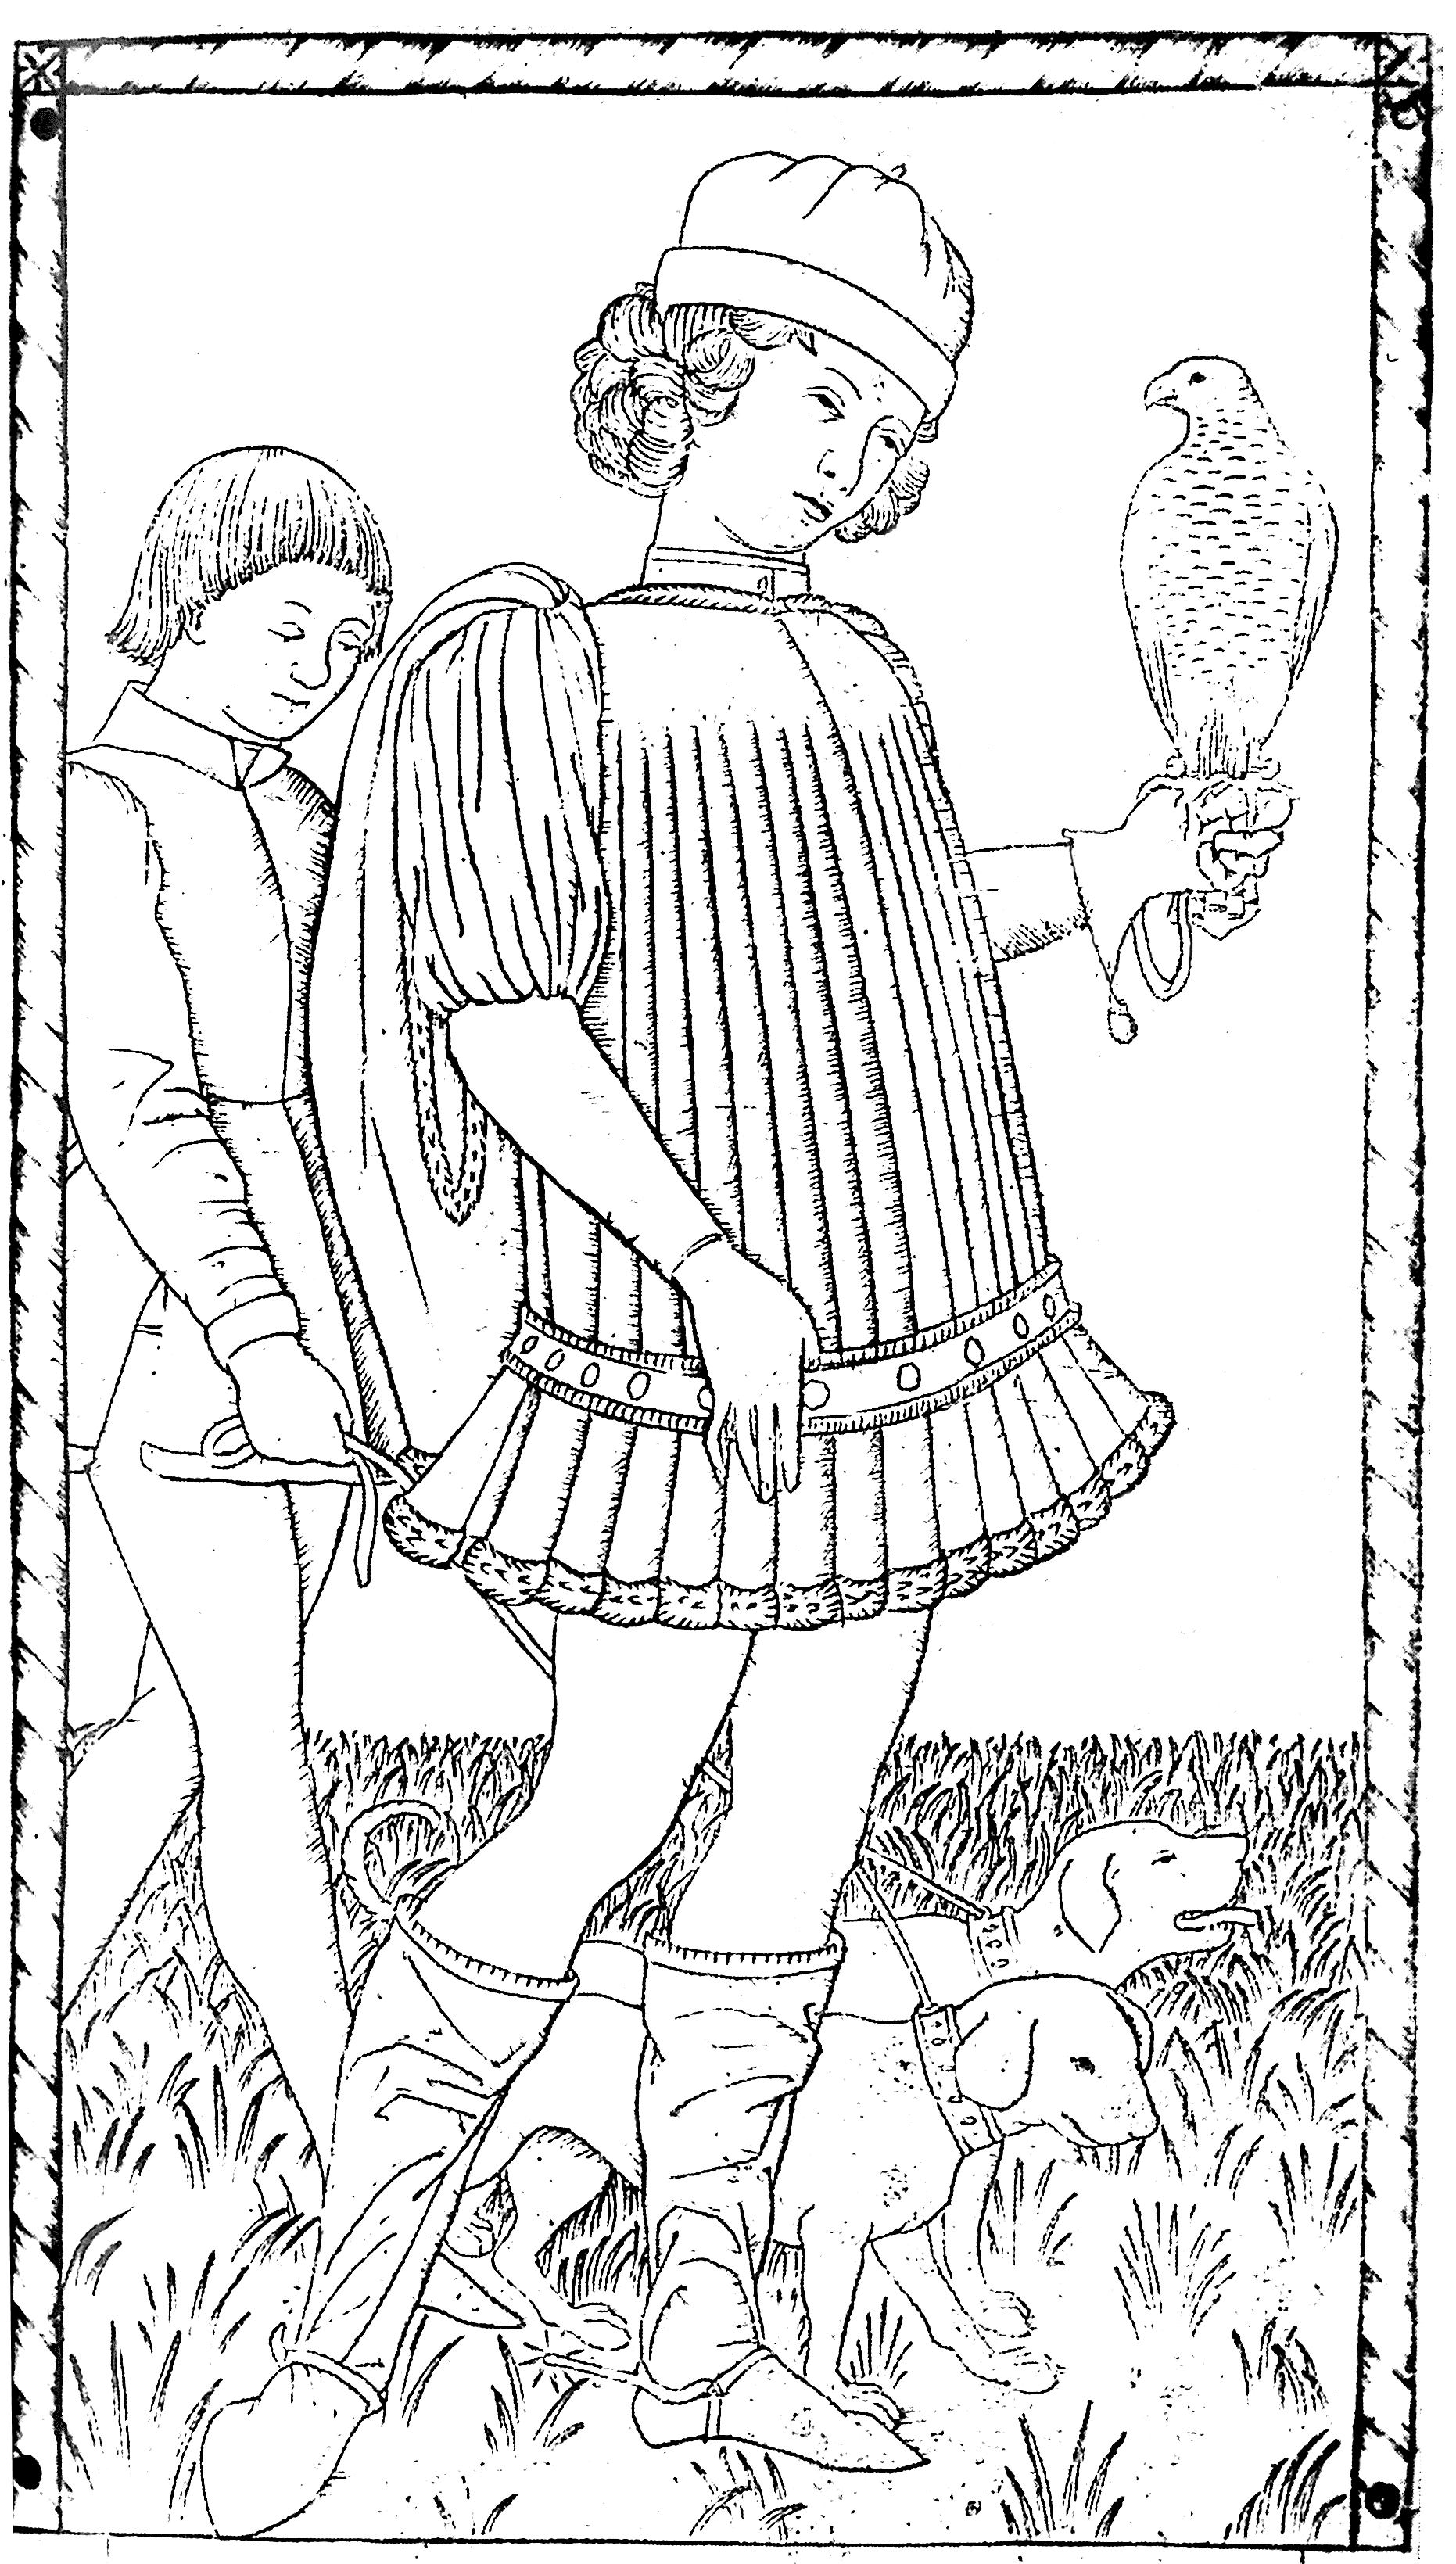 Pour gravure anonyme gentilhomme vers 1465 gratuit a imprimer